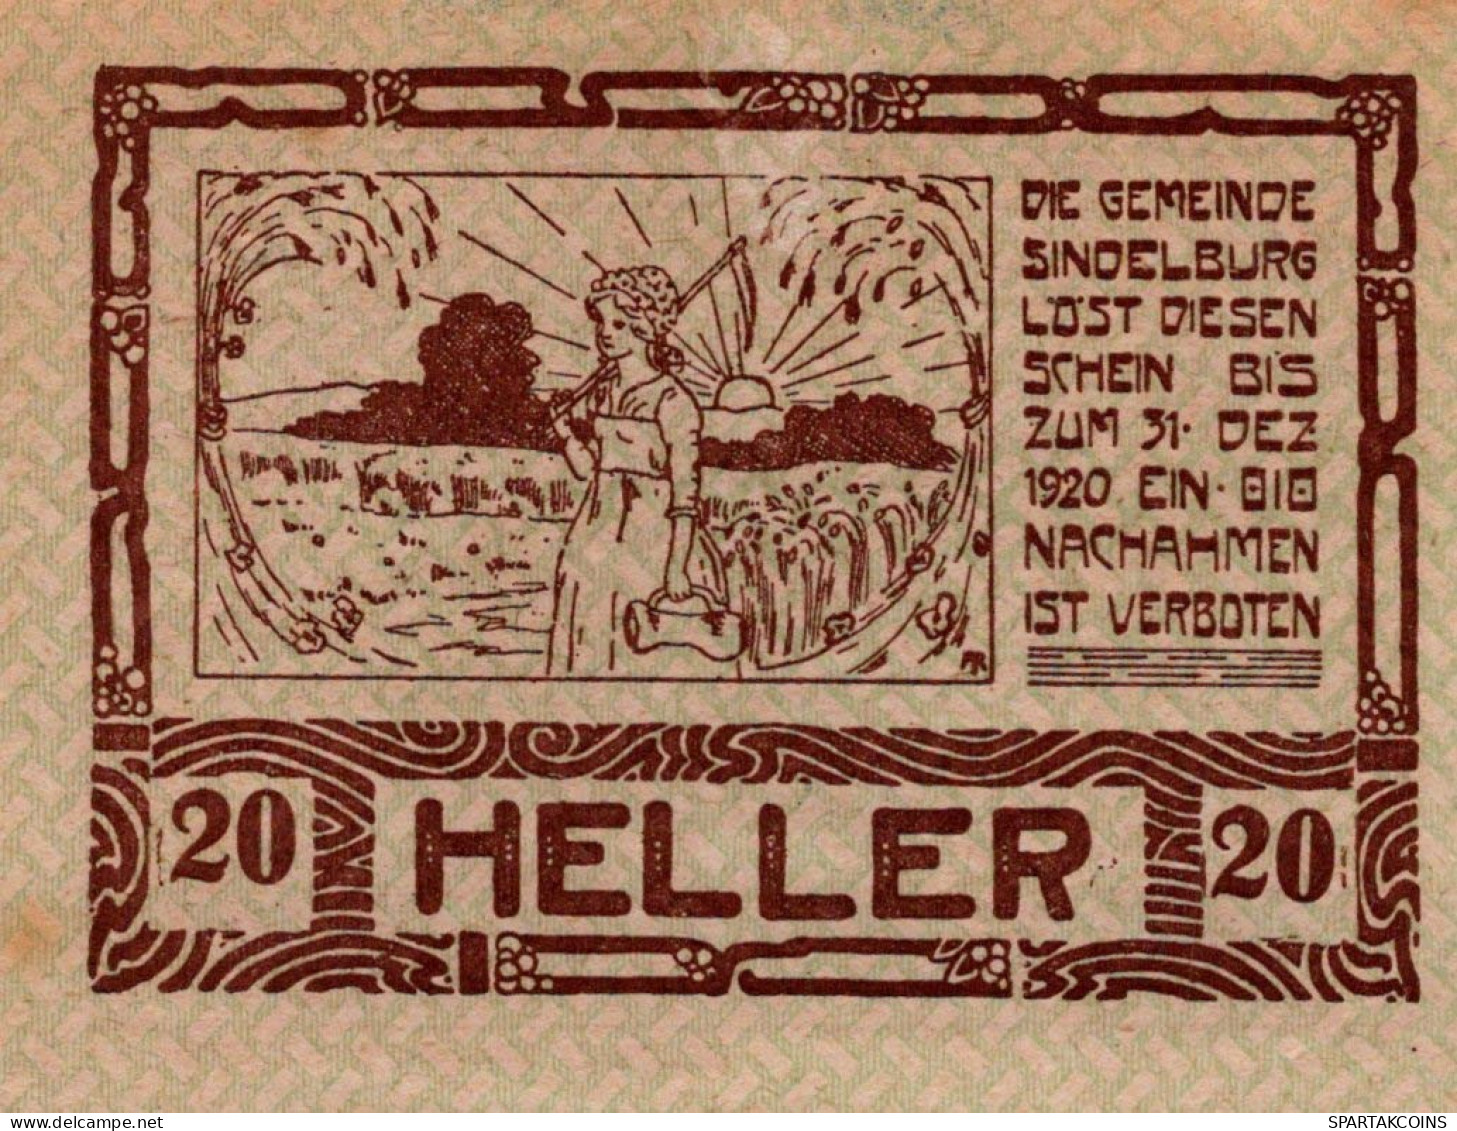 20 HELLER 1920 Stadt Sindelburg Niedrigeren Österreich Notgeld #PI391 - [11] Emissions Locales